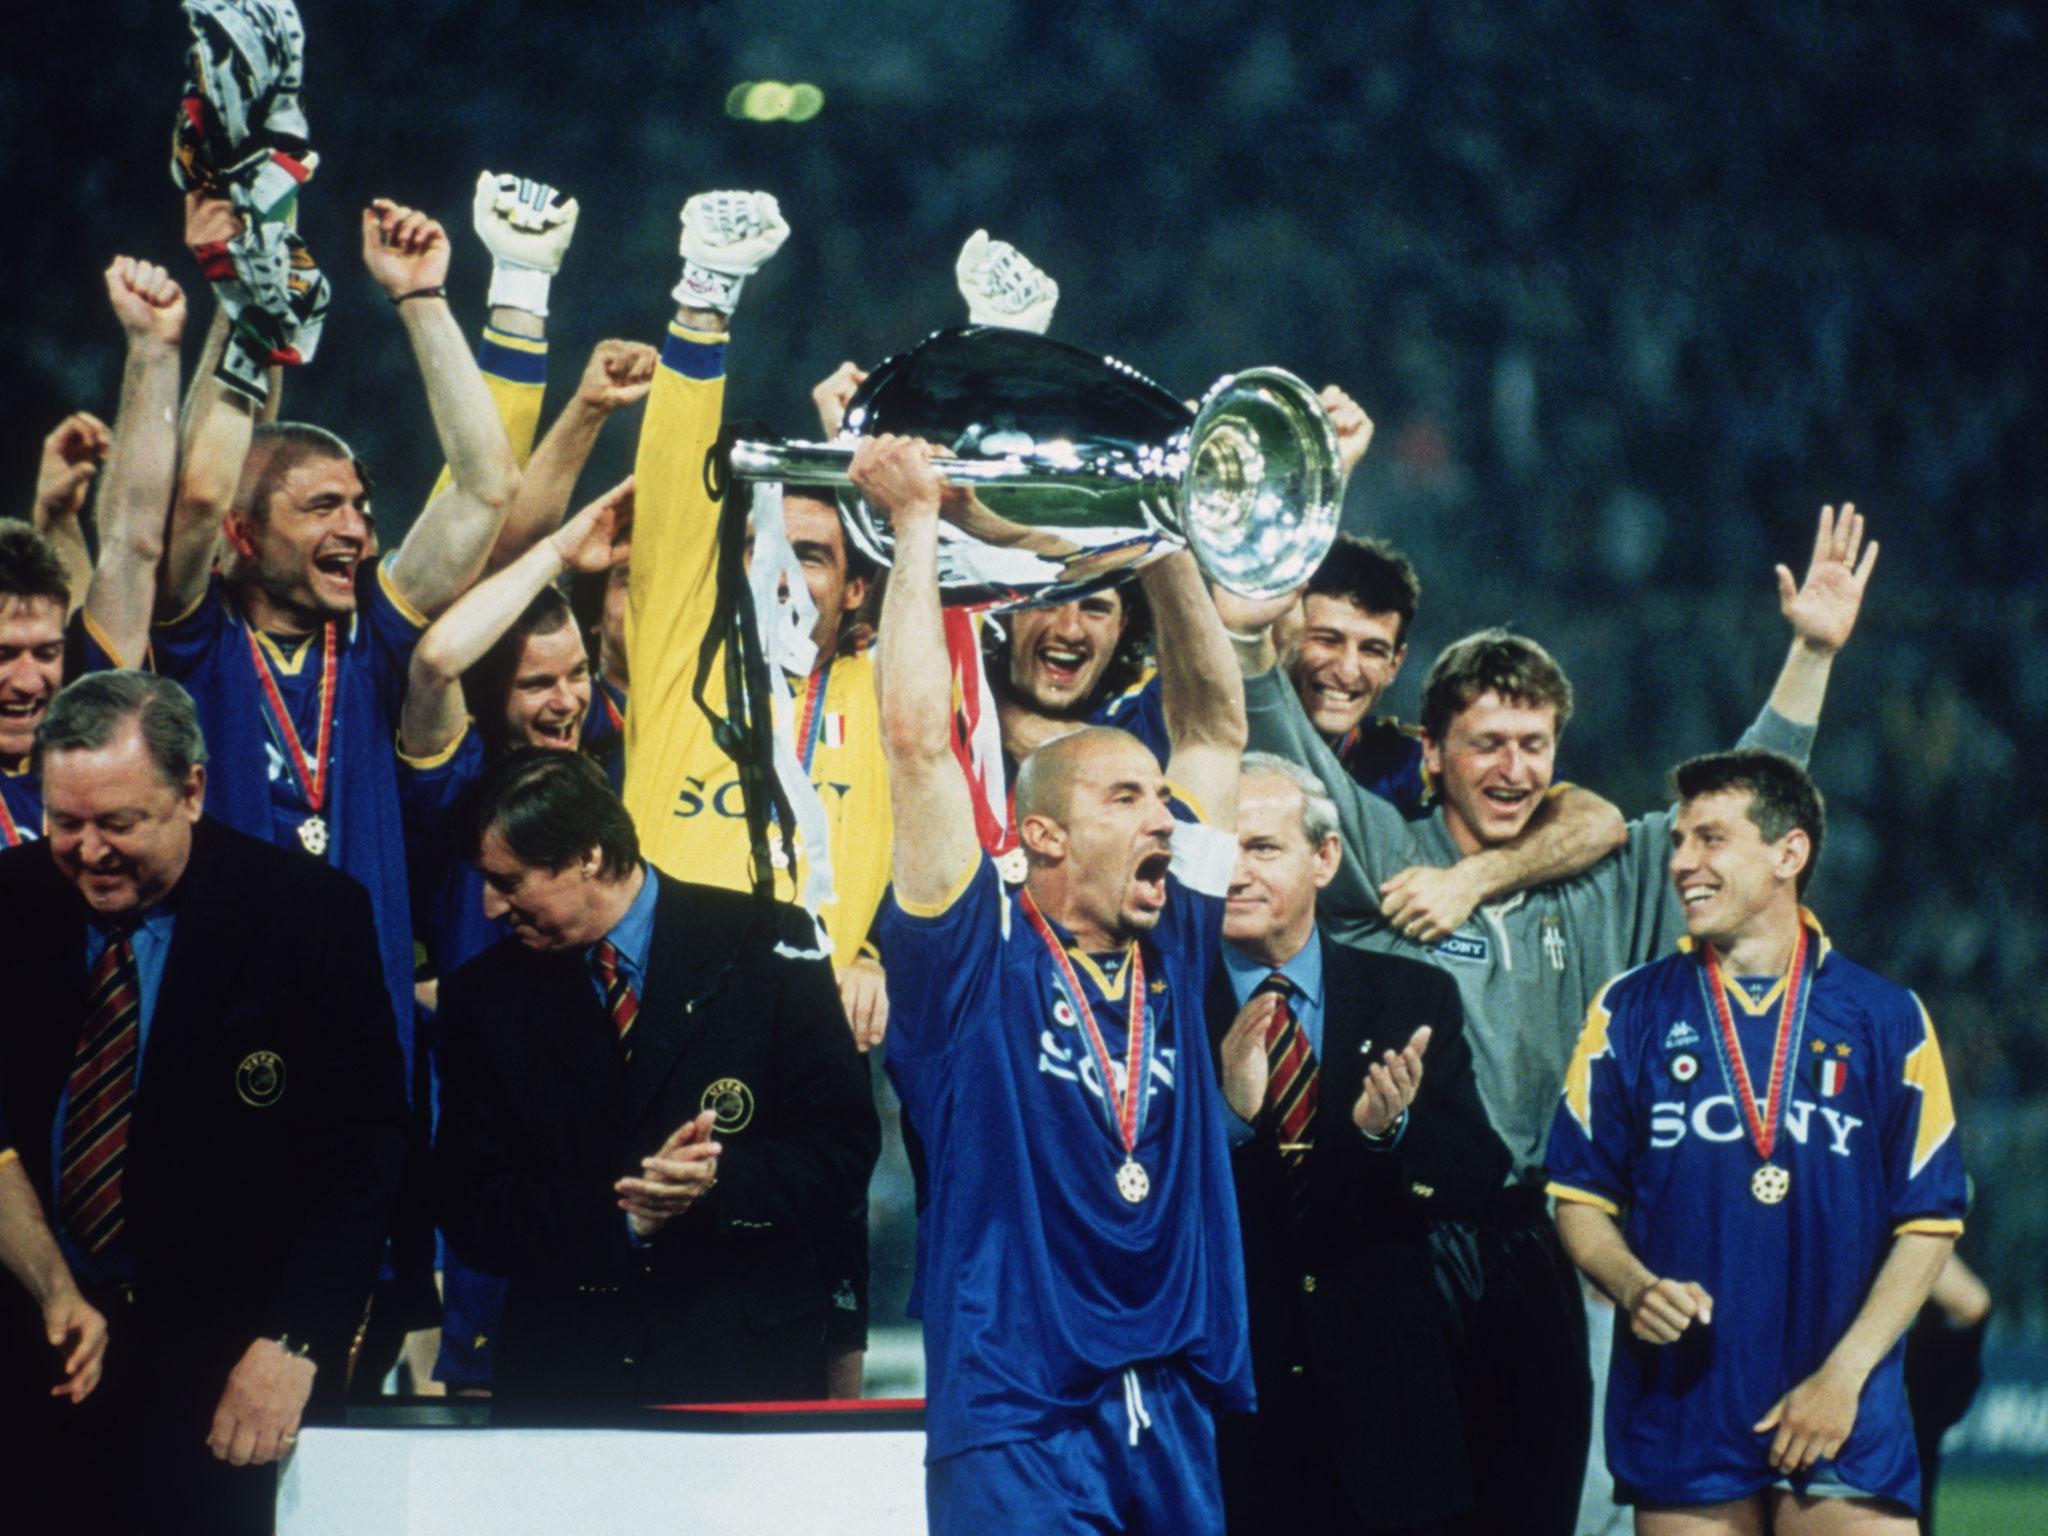 1996 champions league final